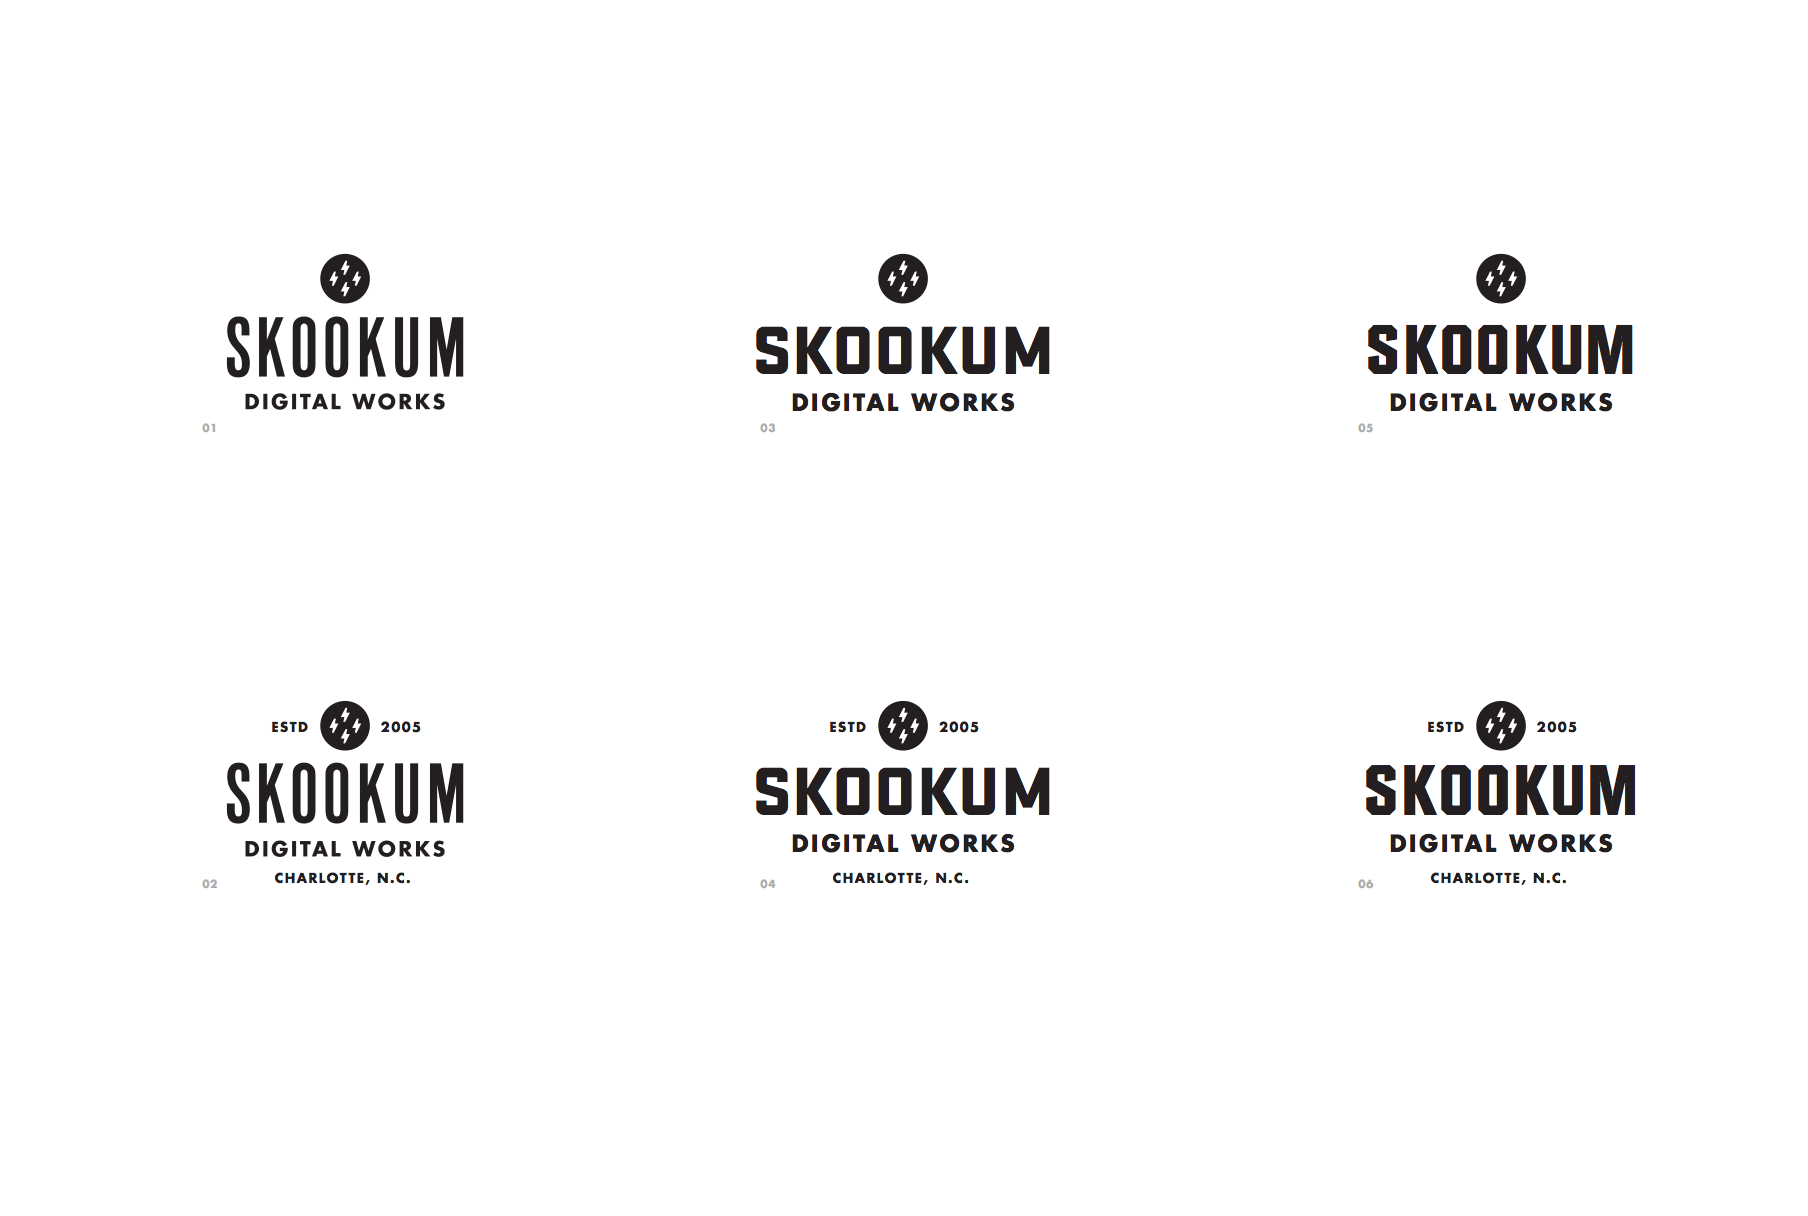 Draplin Logo - Aaron Draplin and Origins of the Skookum Space Volcano